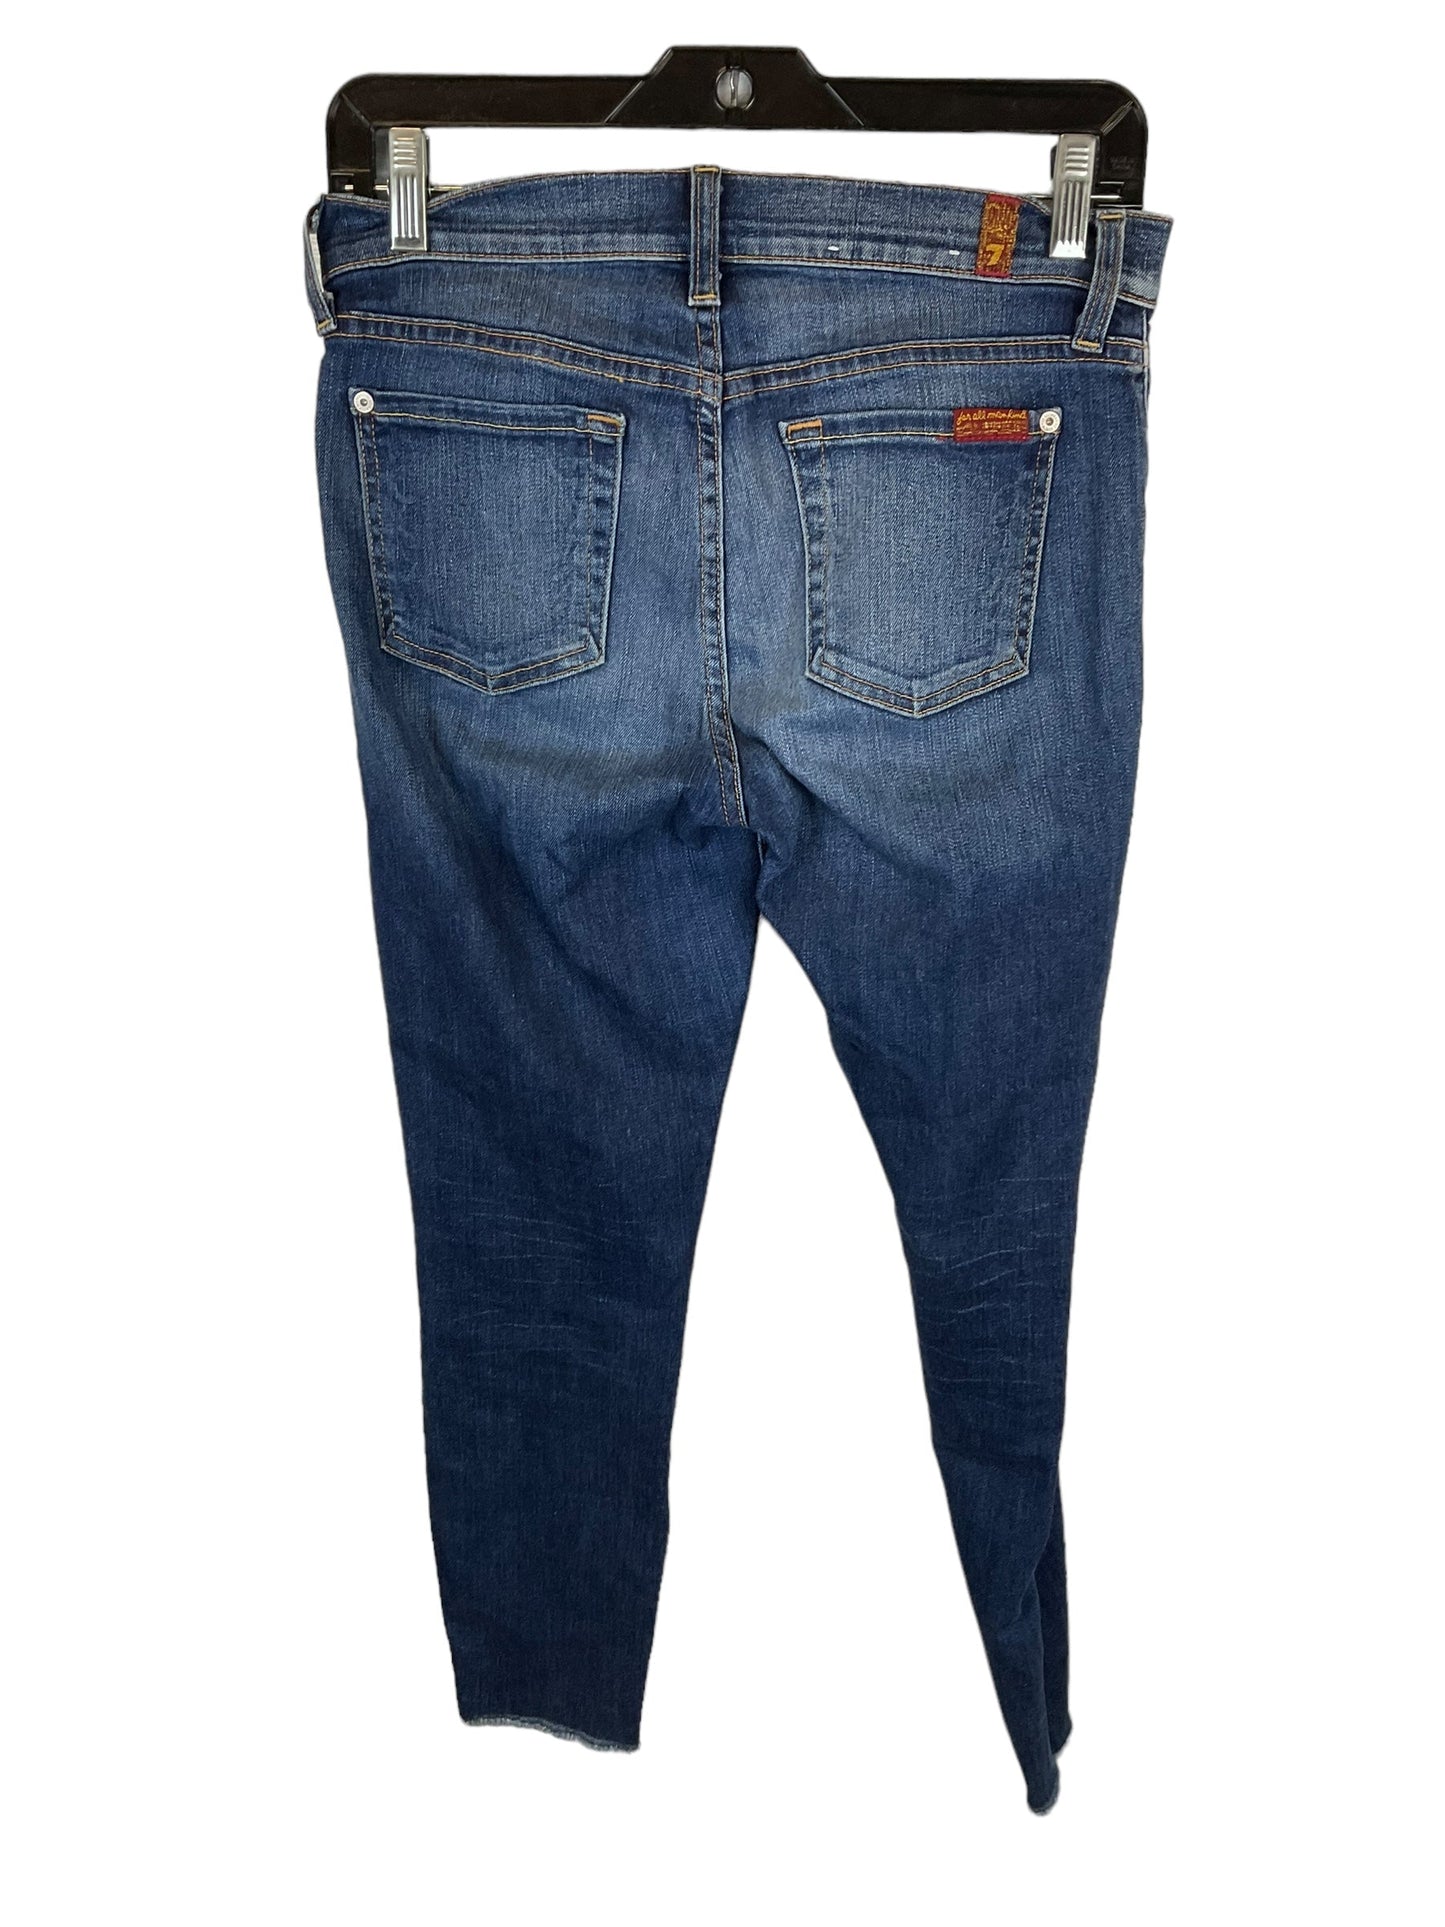 Blue Jeans Designer 7 For All Mankind, Size 2